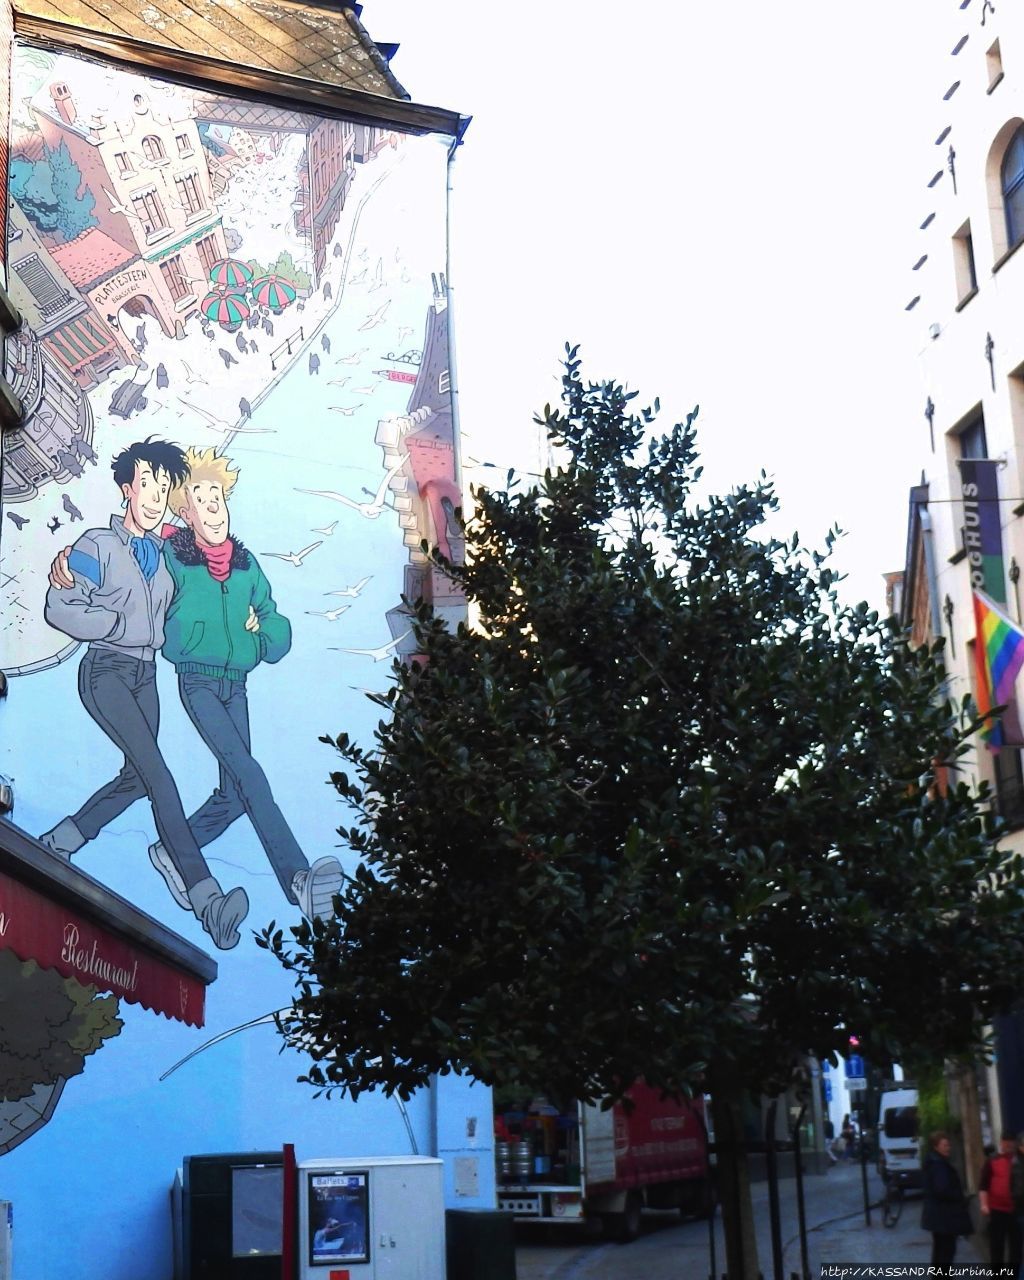 Брюссель. Бельгийские  комиксы и граффити Брюссель, Бельгия